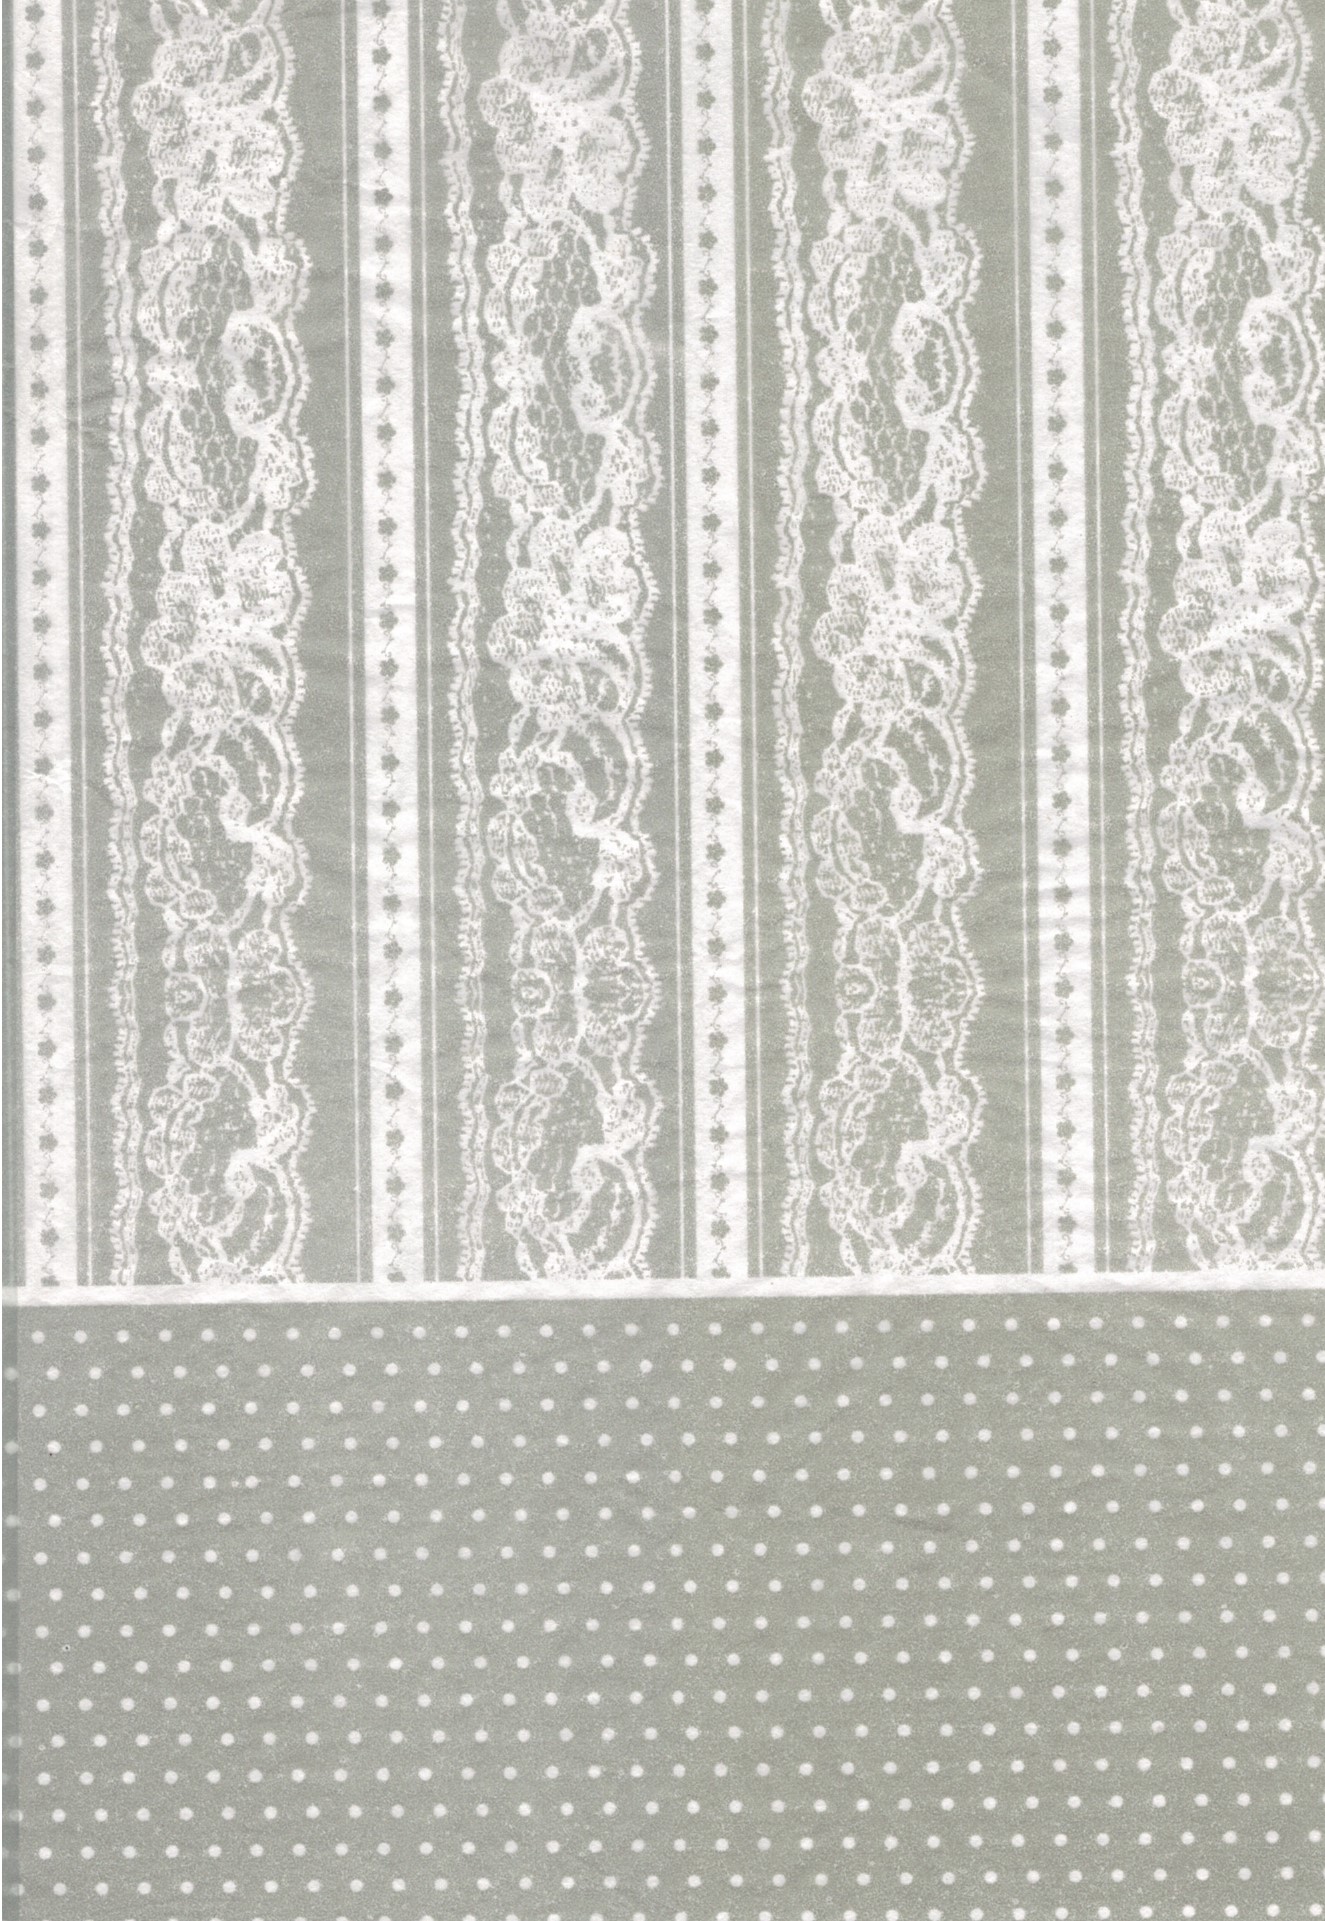 Découpage-Papier, 25x35 cm, 17 g, weiße Spitze und Pünktchen auf grauem Grund, 1 Blatt